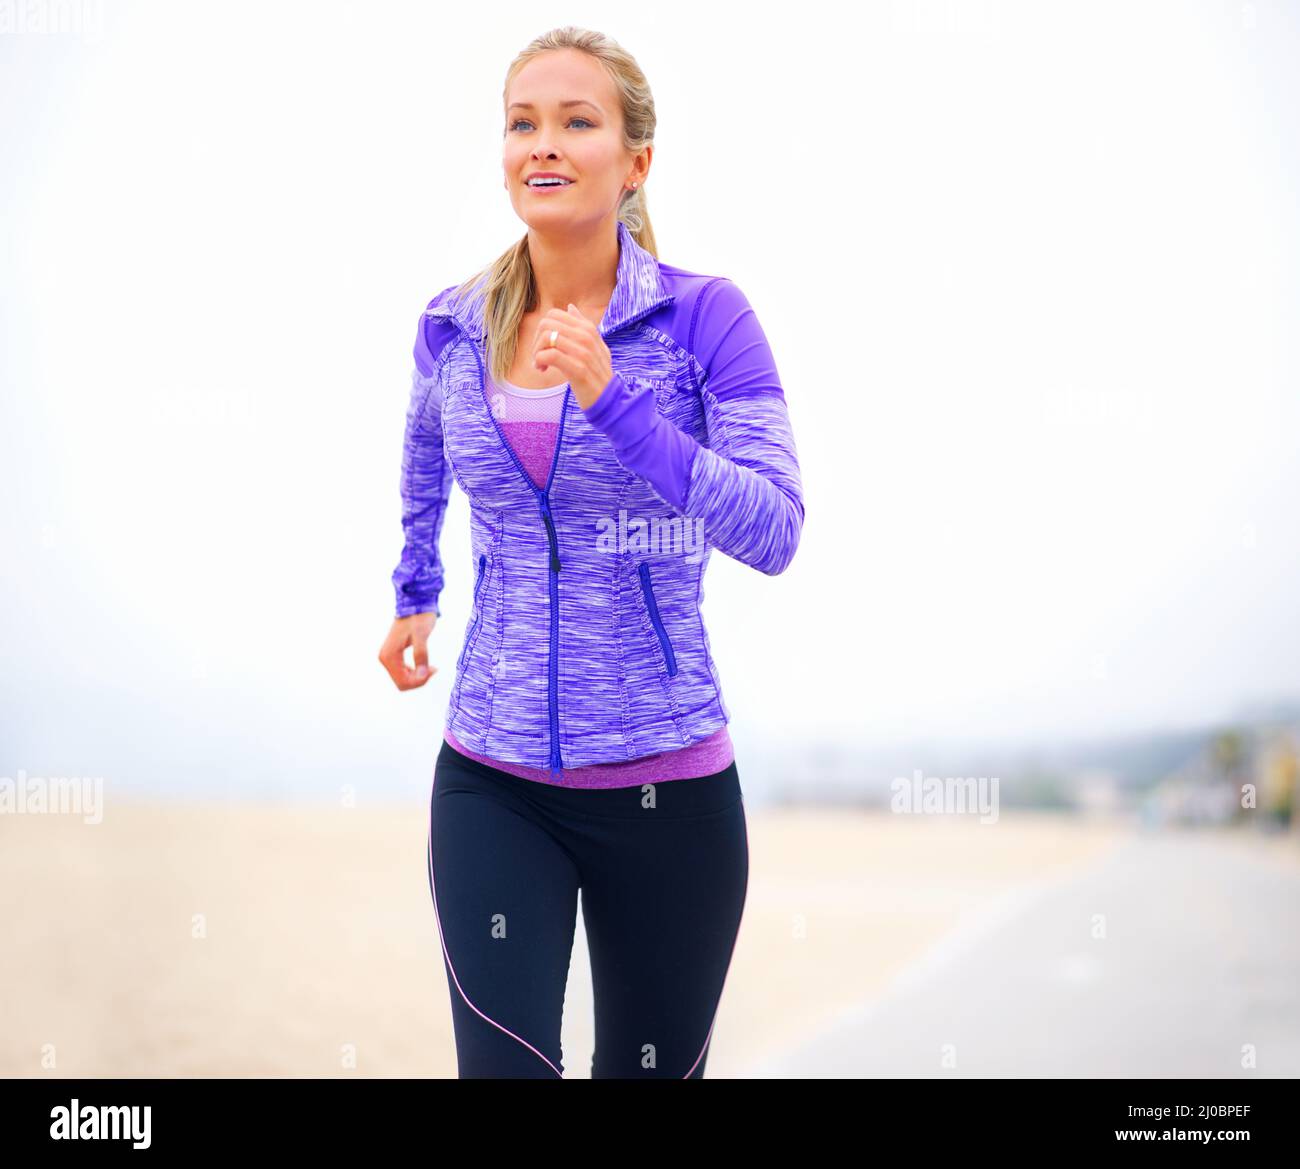 Fitter durch den Schritt. Aufnahme einer jungen Frau in Sportkleidung, die am Strand steht. Stockfoto